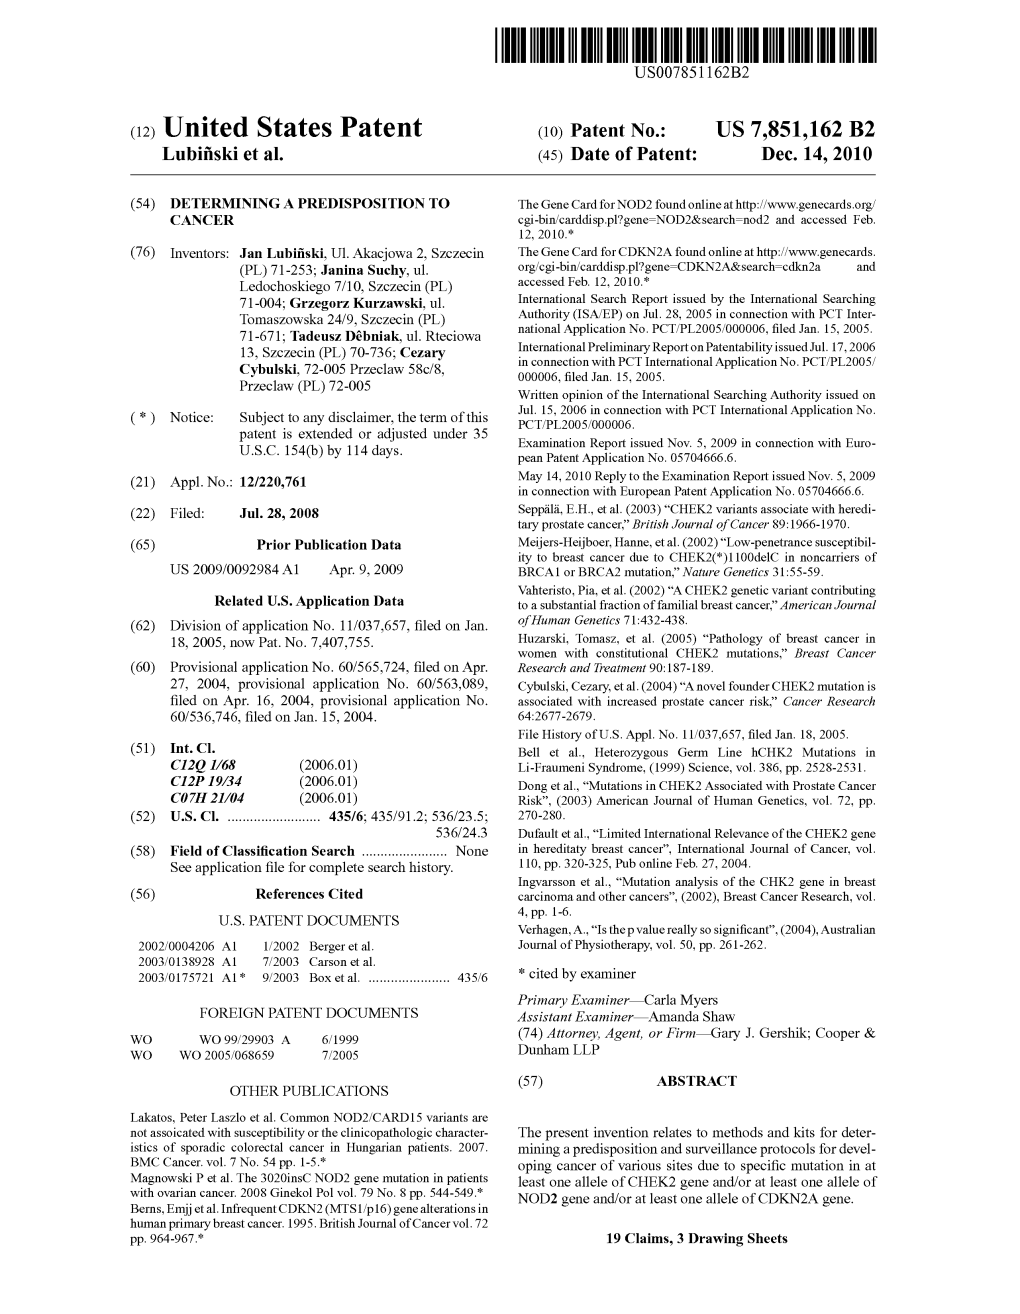 (12) United States Patent (10) Patent No.: US 7,851,162 B2 Lubifiski Et Al